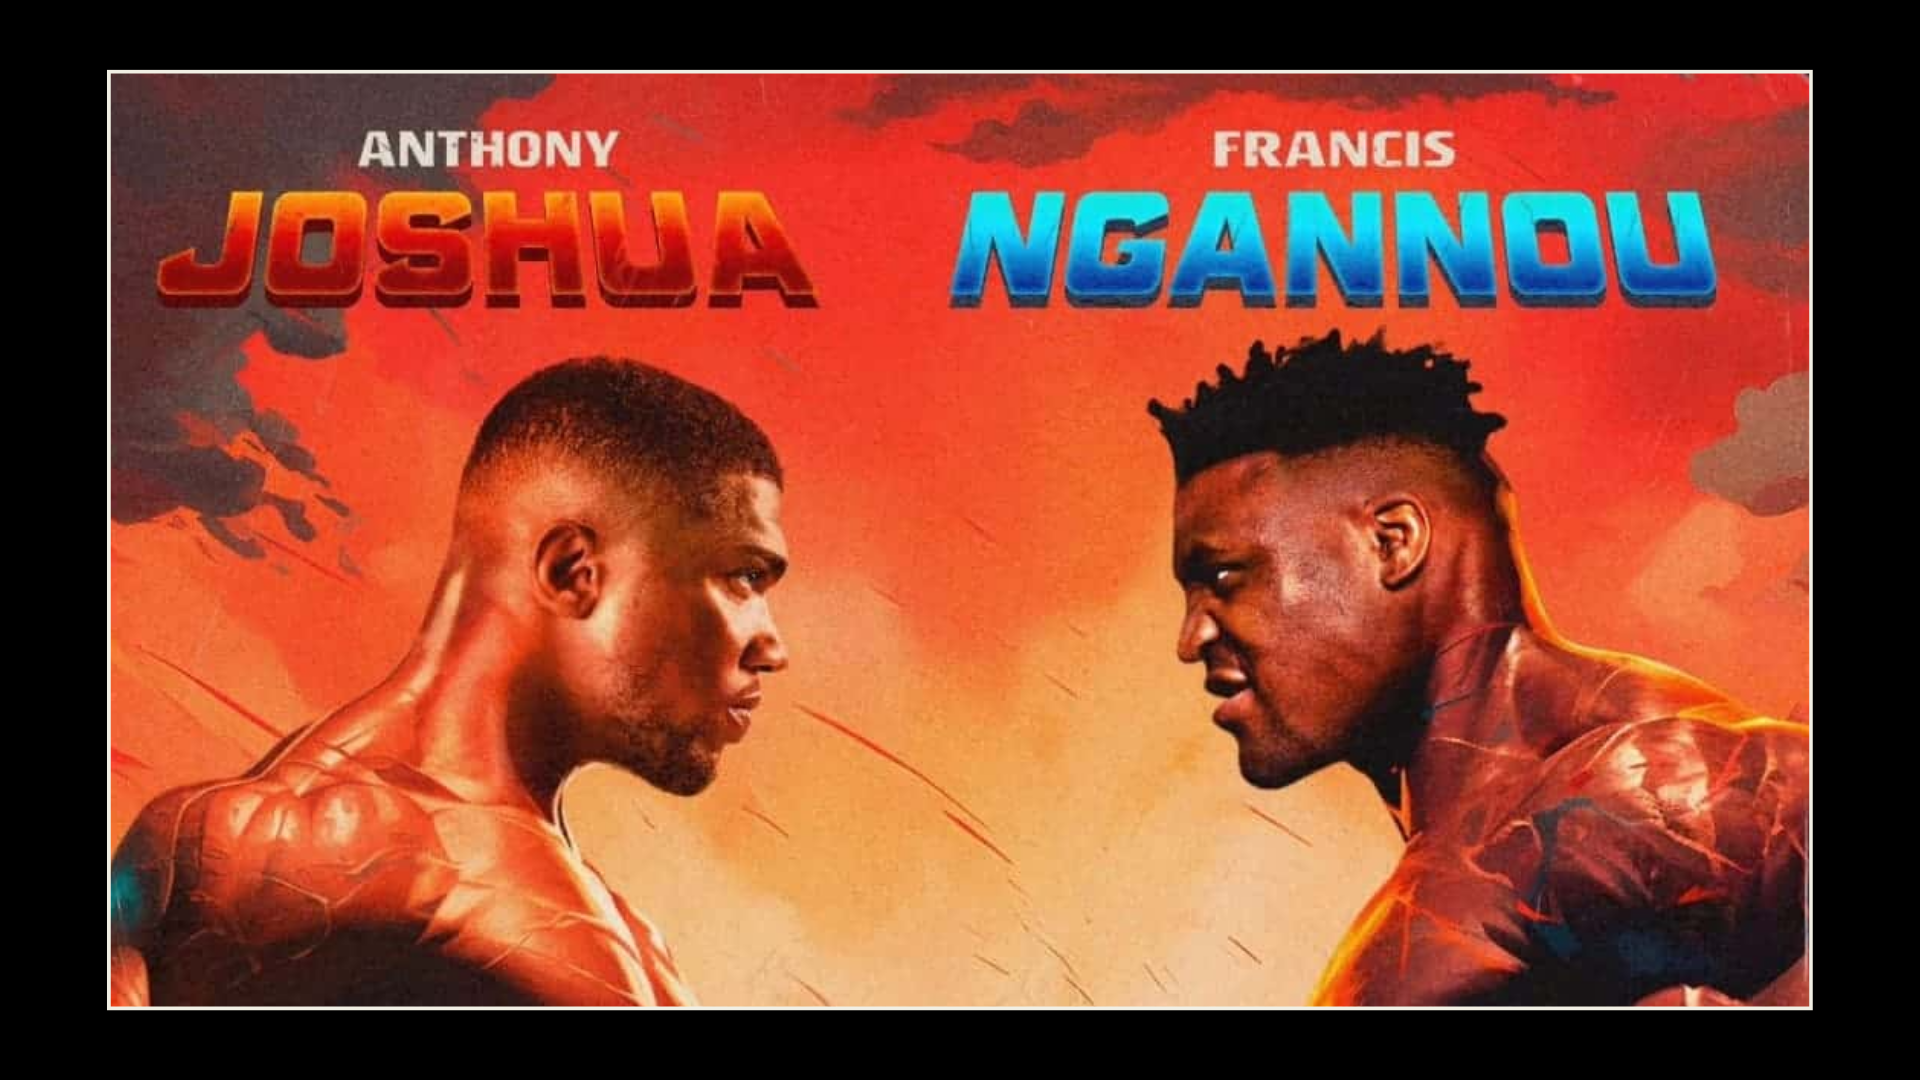 Anthony Joshua vs Francos Ngannou